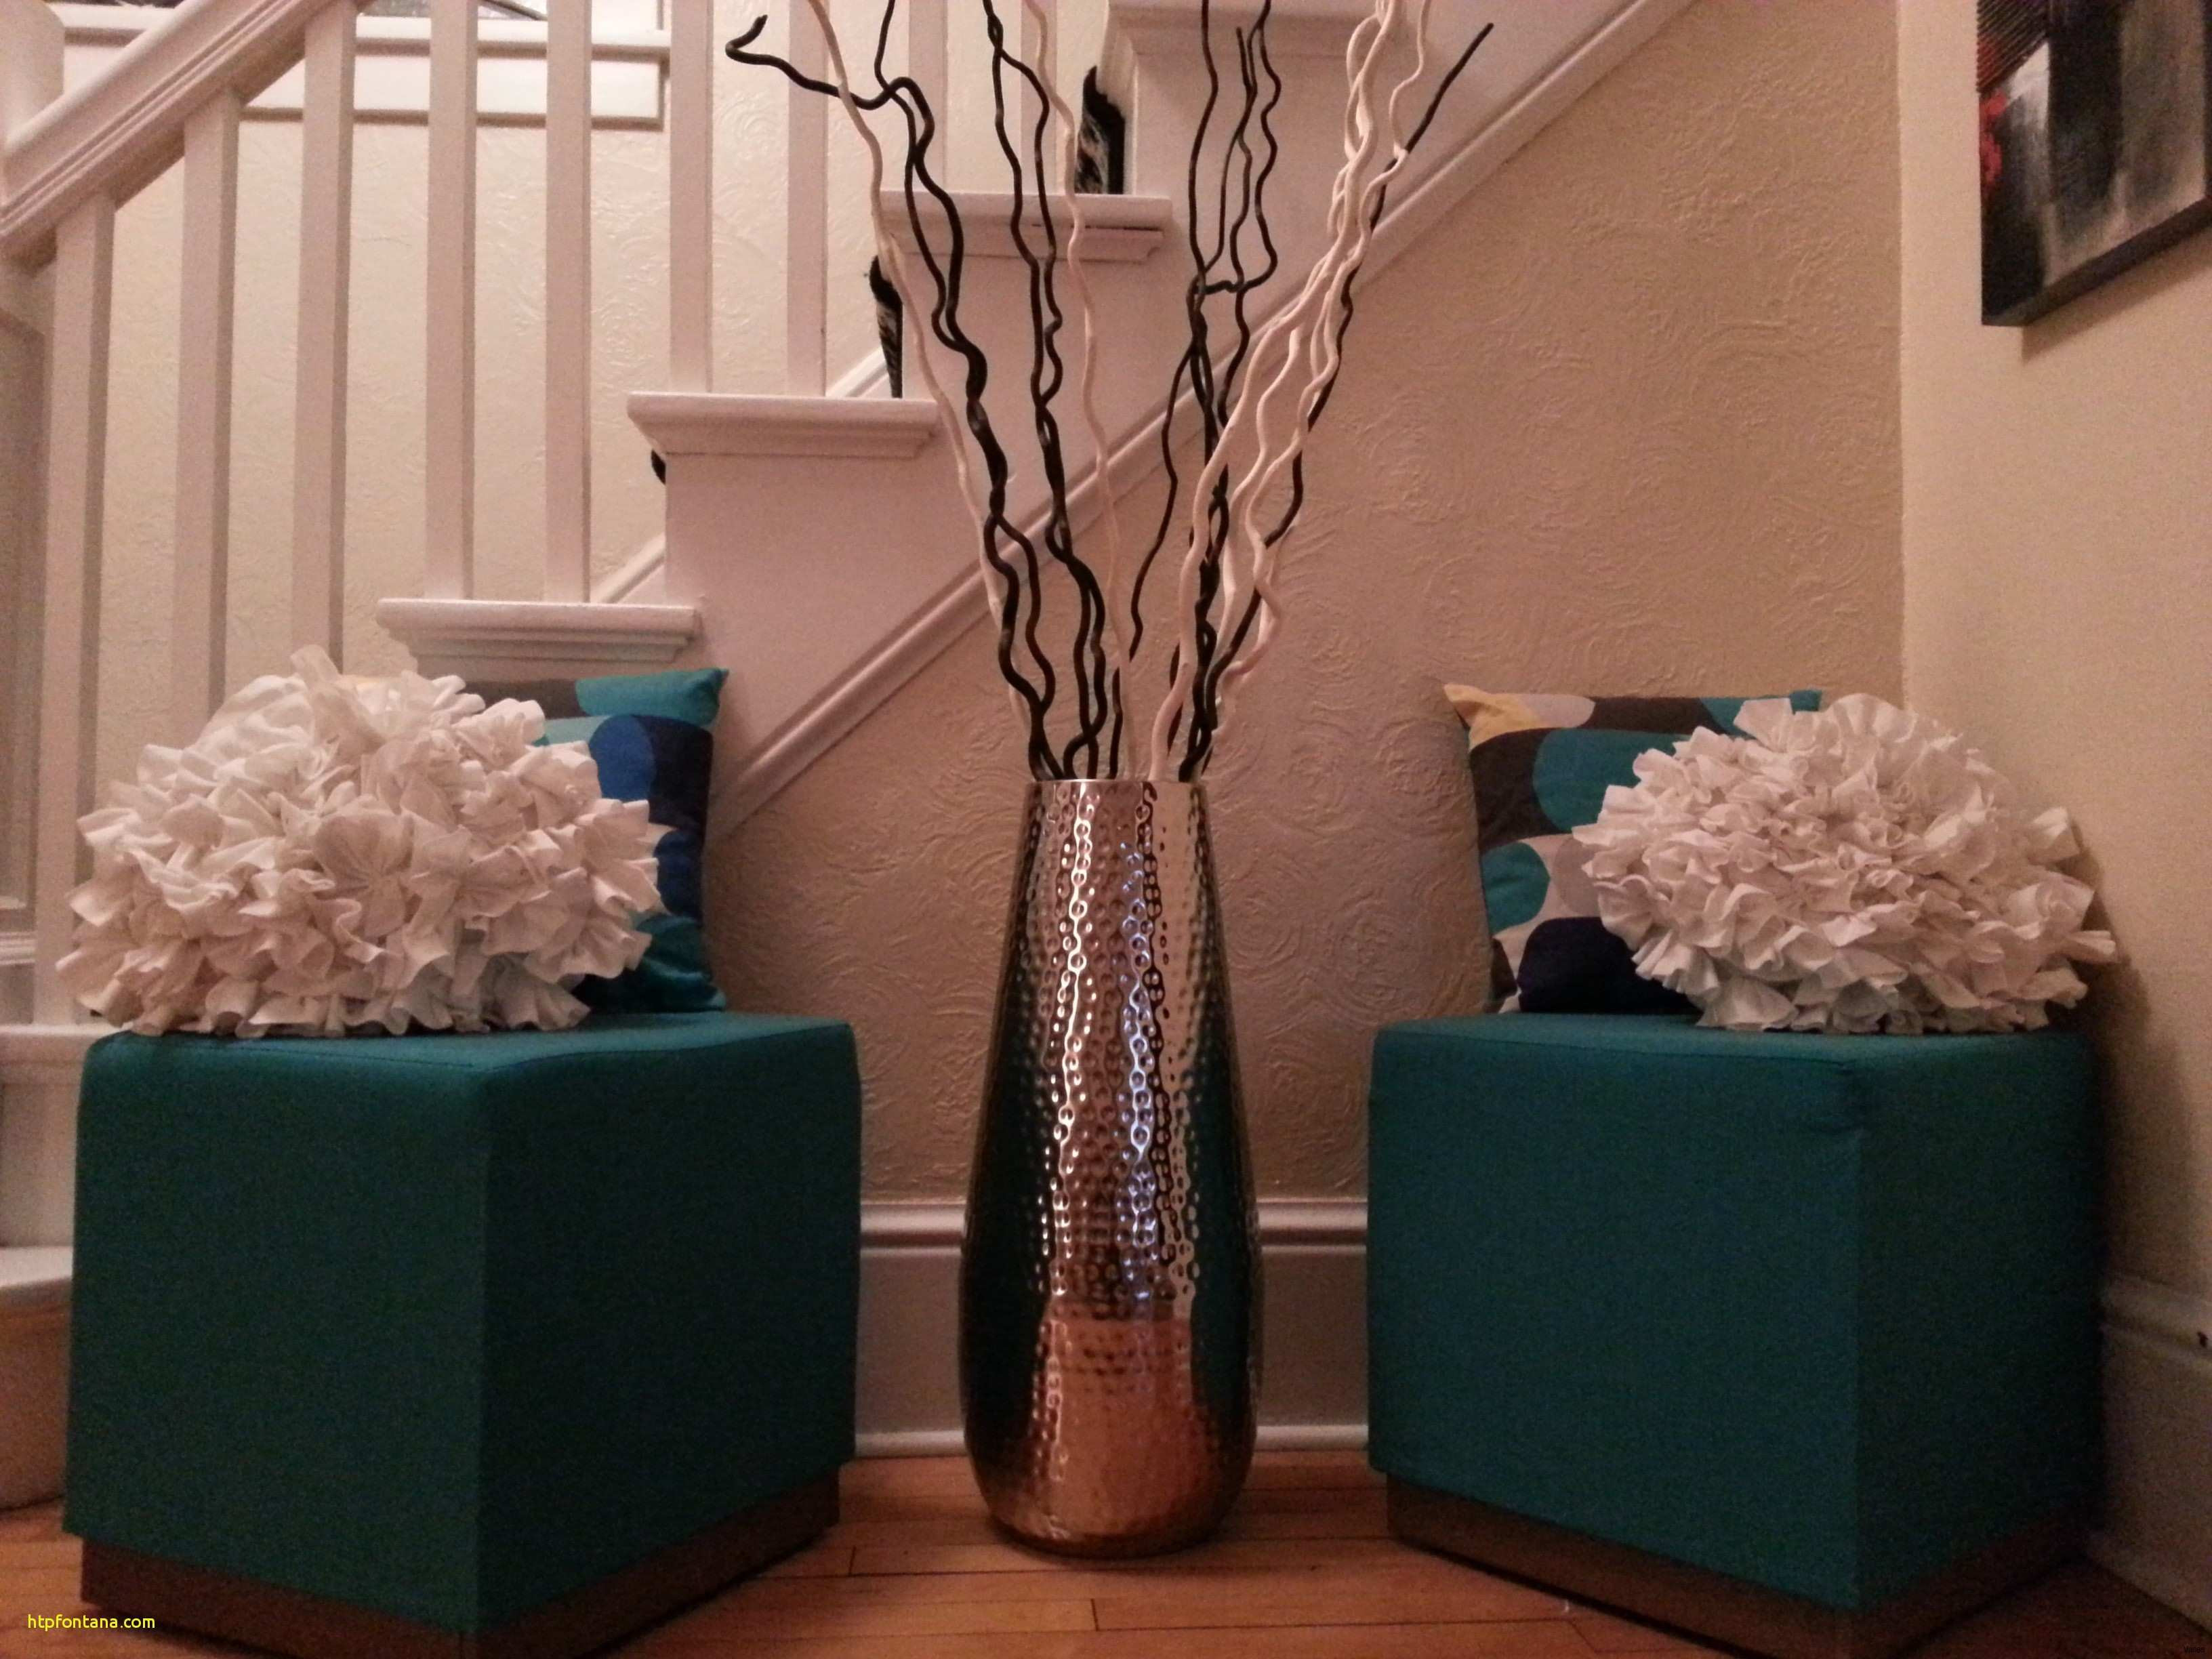 vase ideas for living room